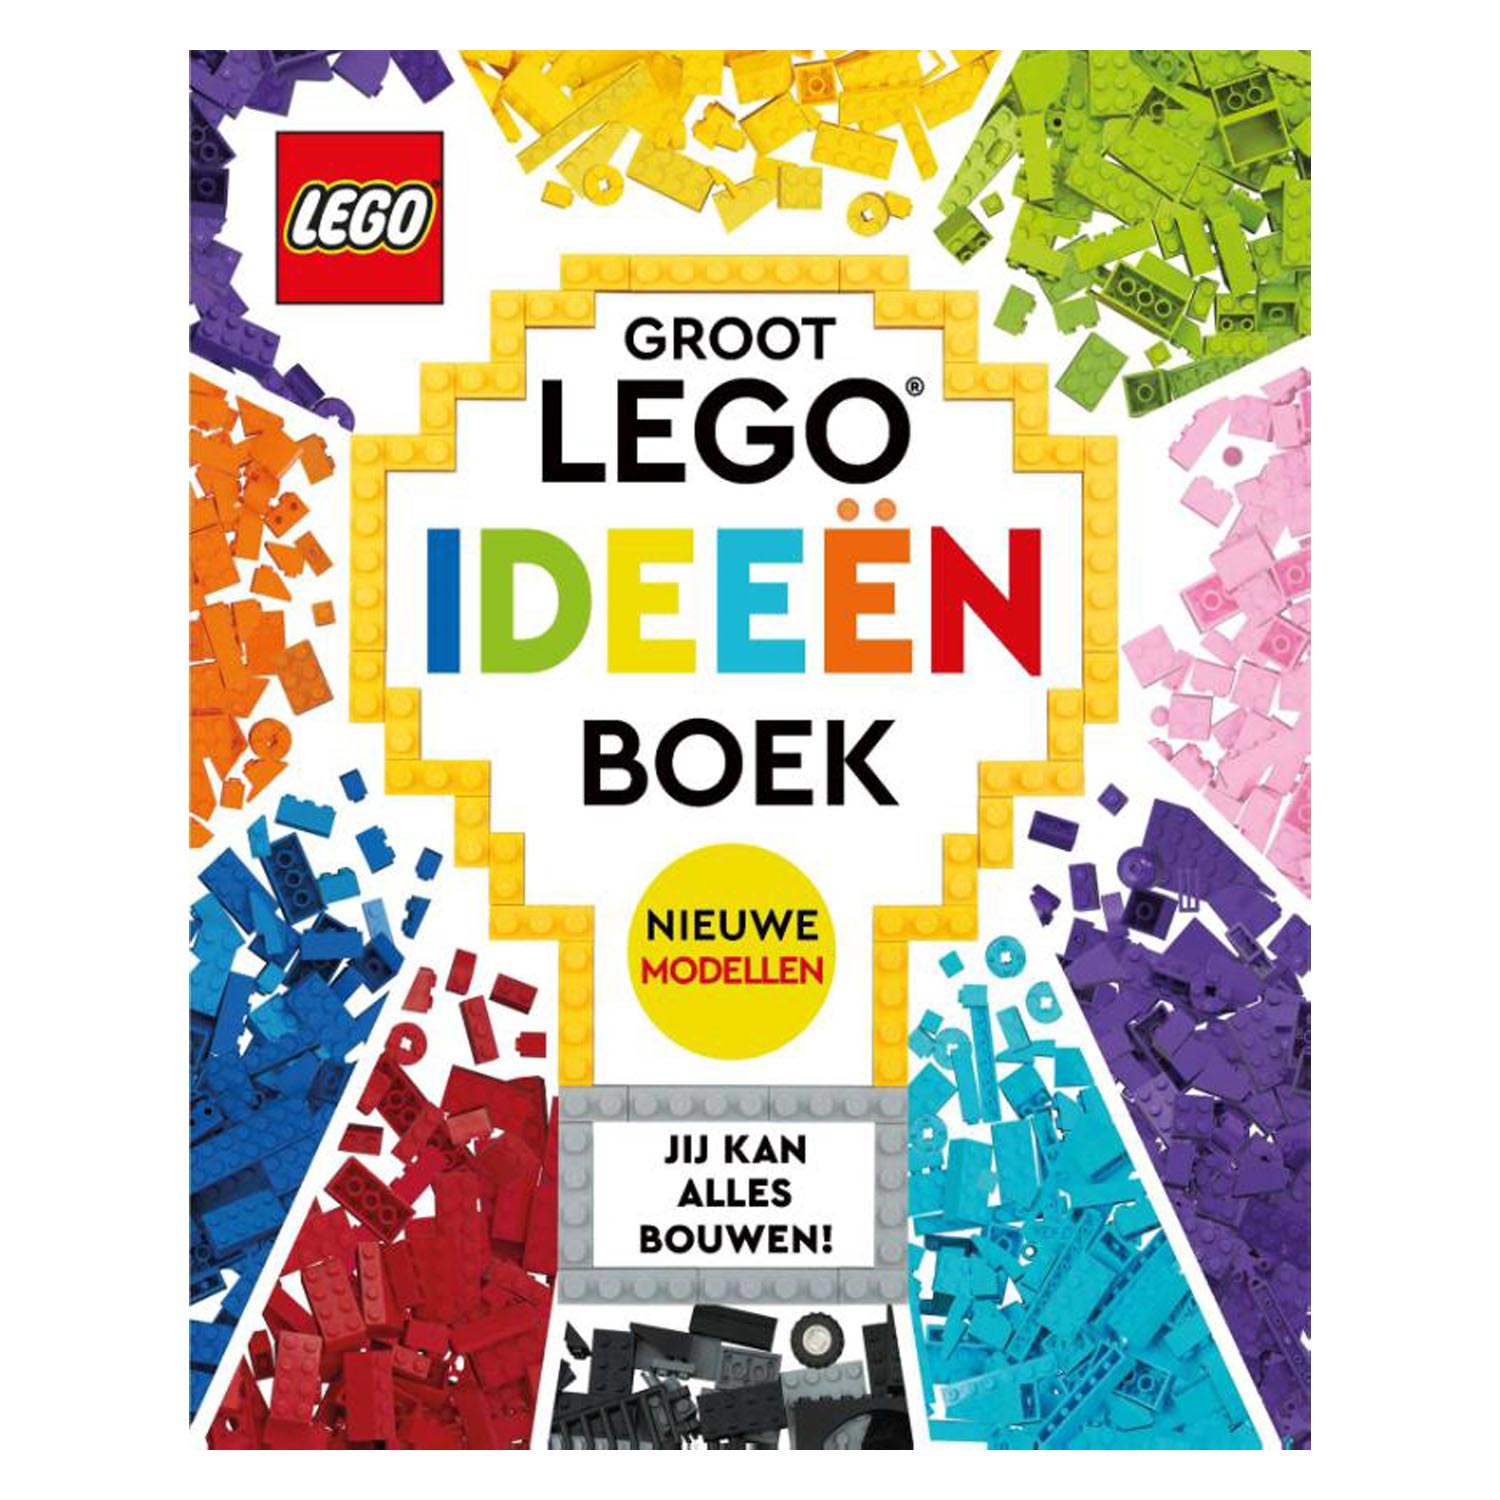 Groot LEGO Ideeenboek